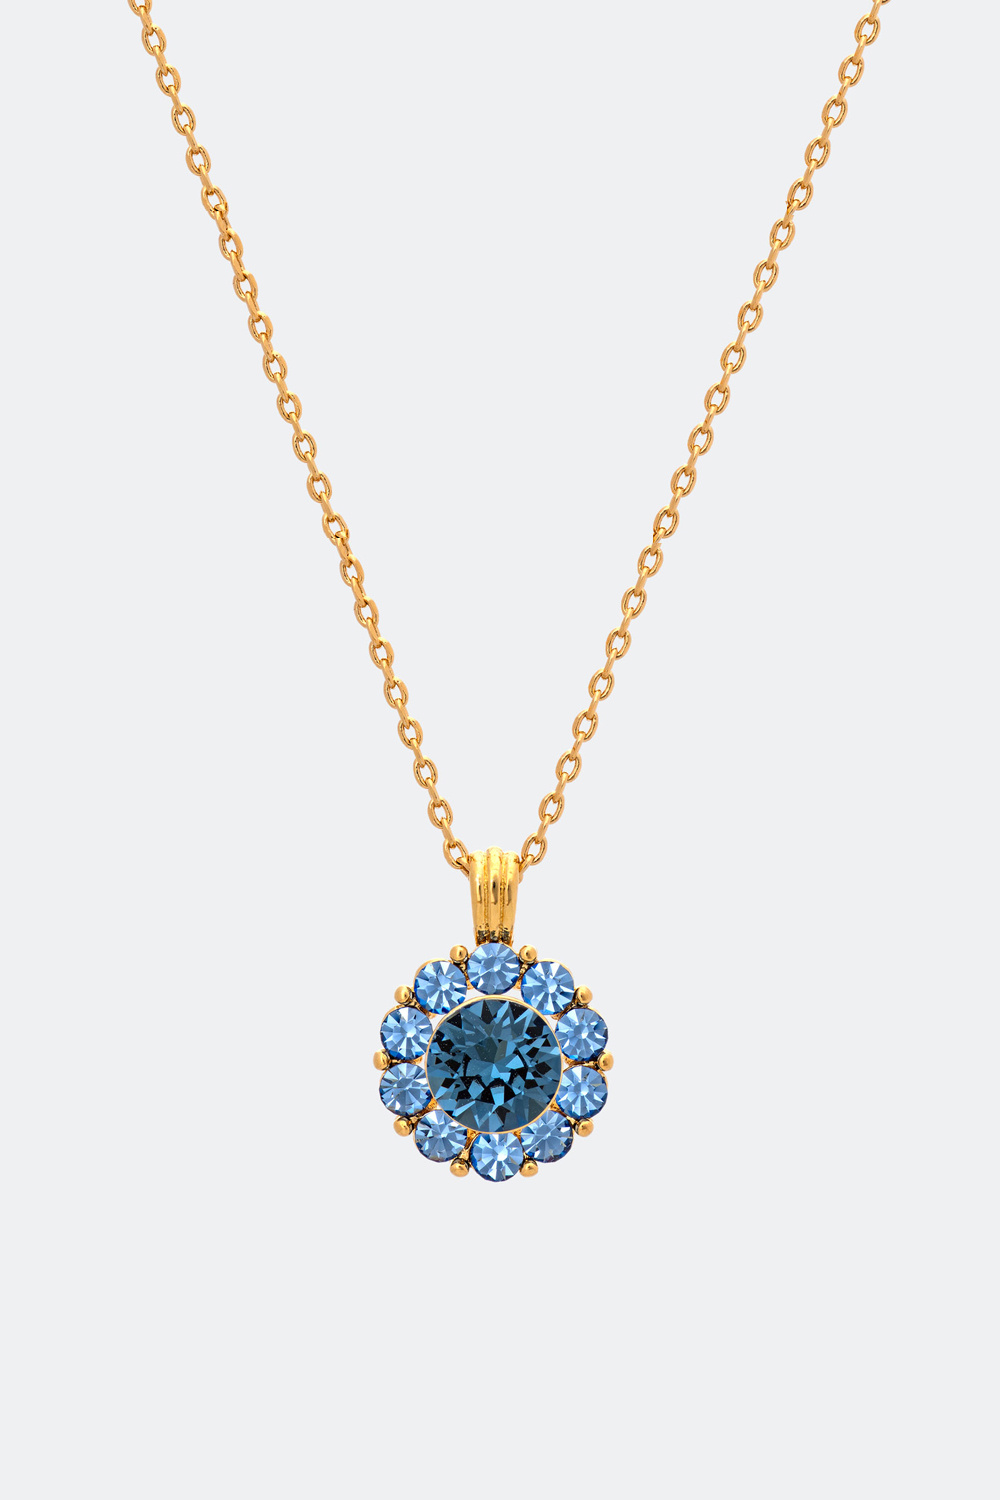 Sofia necklace - Royal blue